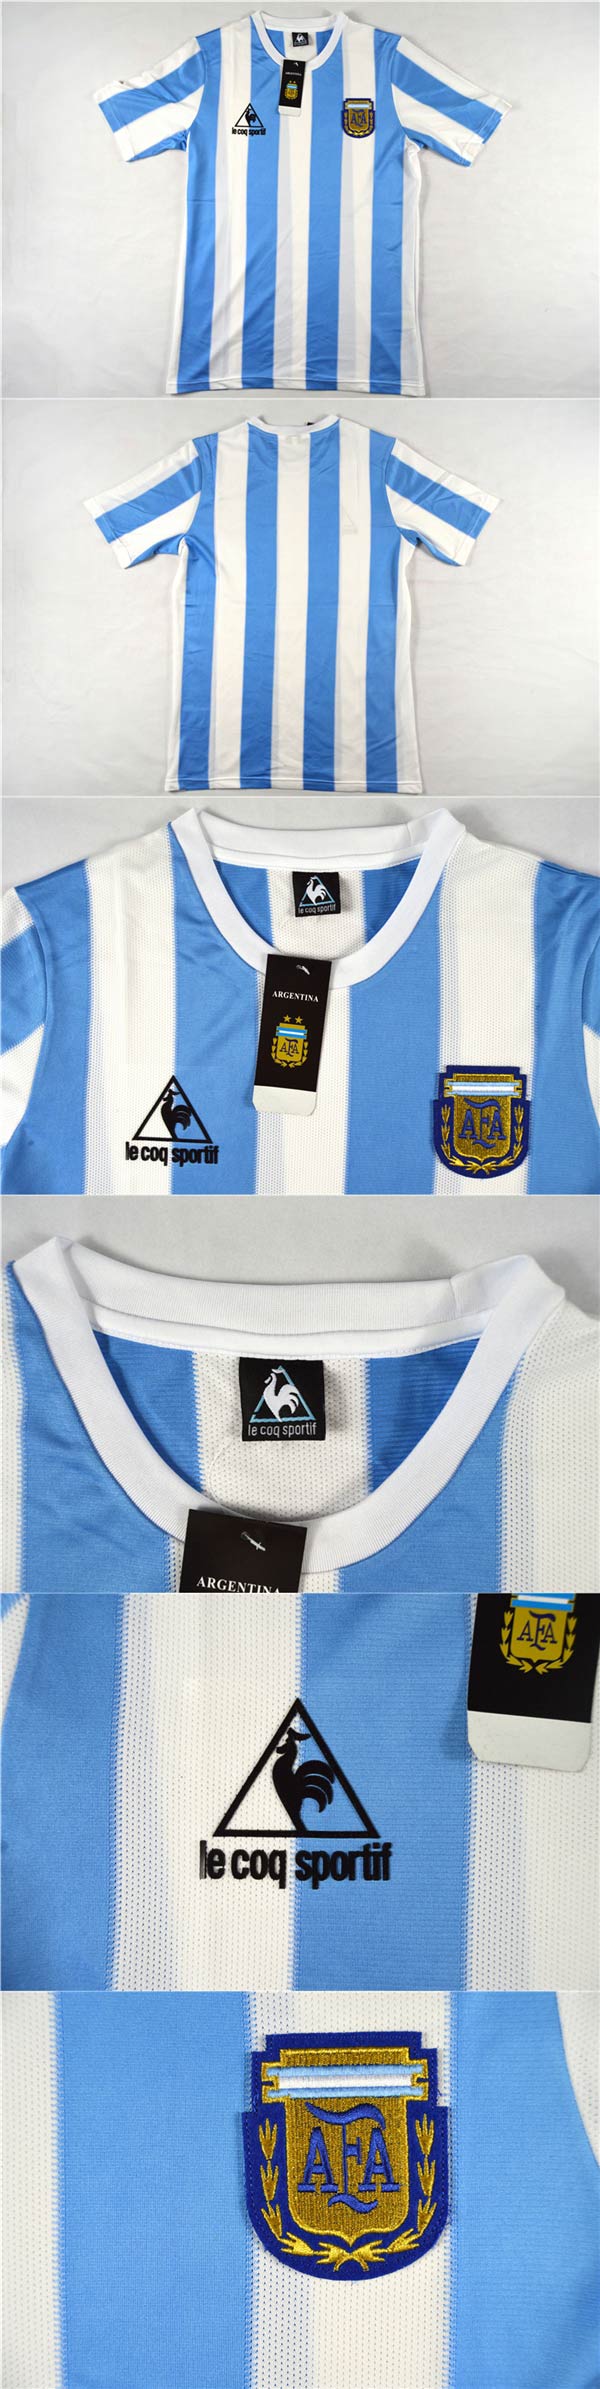 1986 Argentina Retro Home #10 MARADONA Soccer Shirt Jersey - Click Image to Close